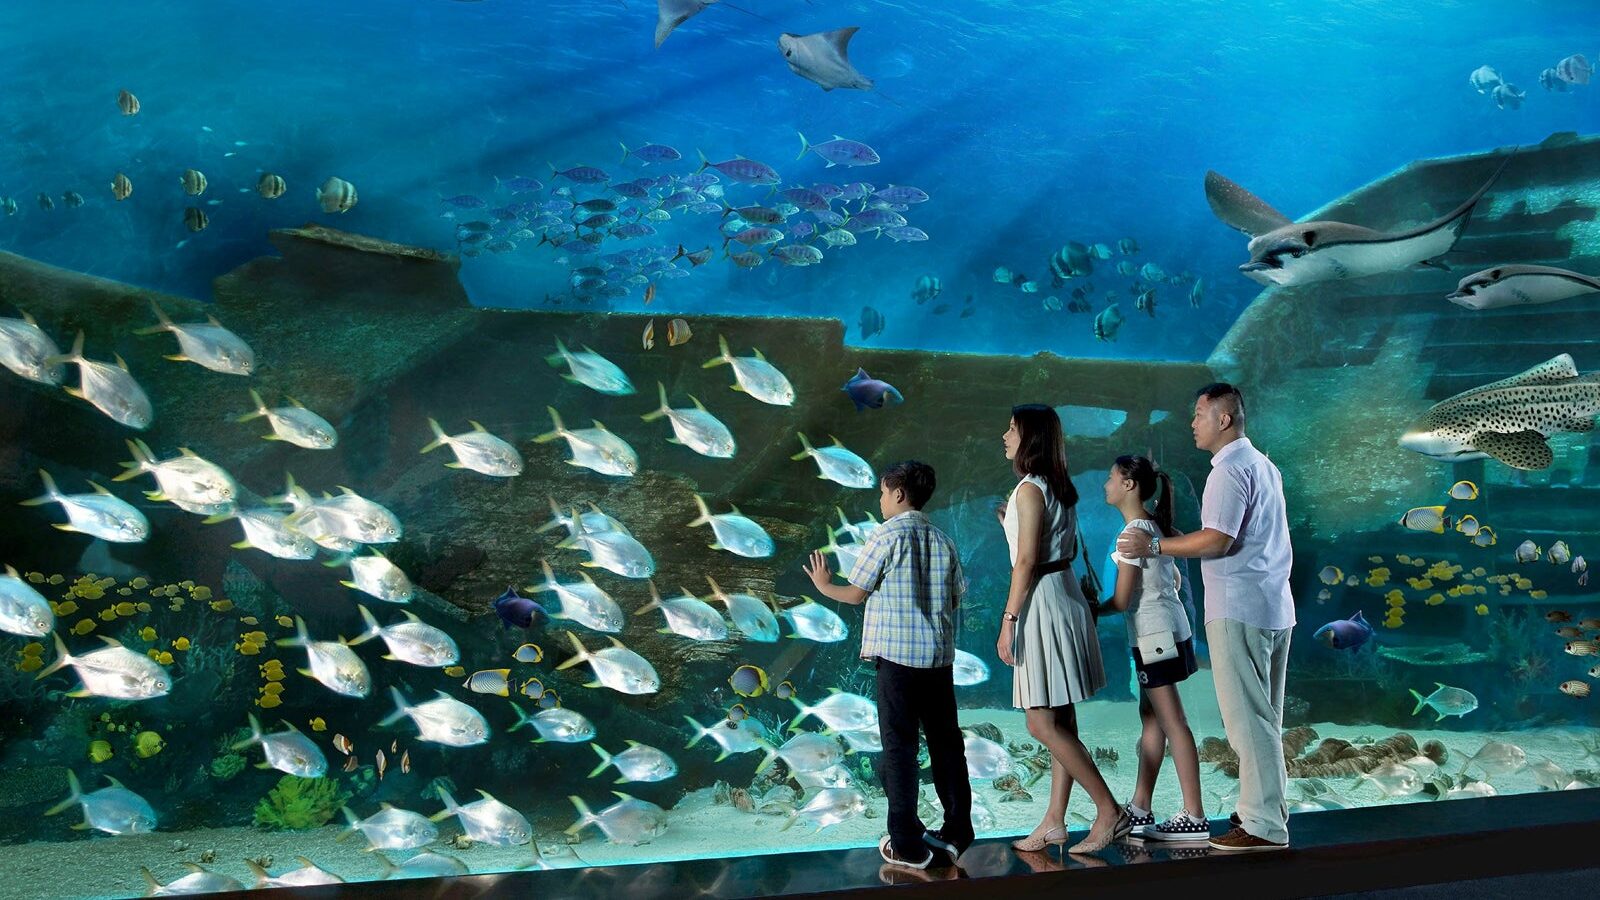 S.E.A Aquarium Singapore